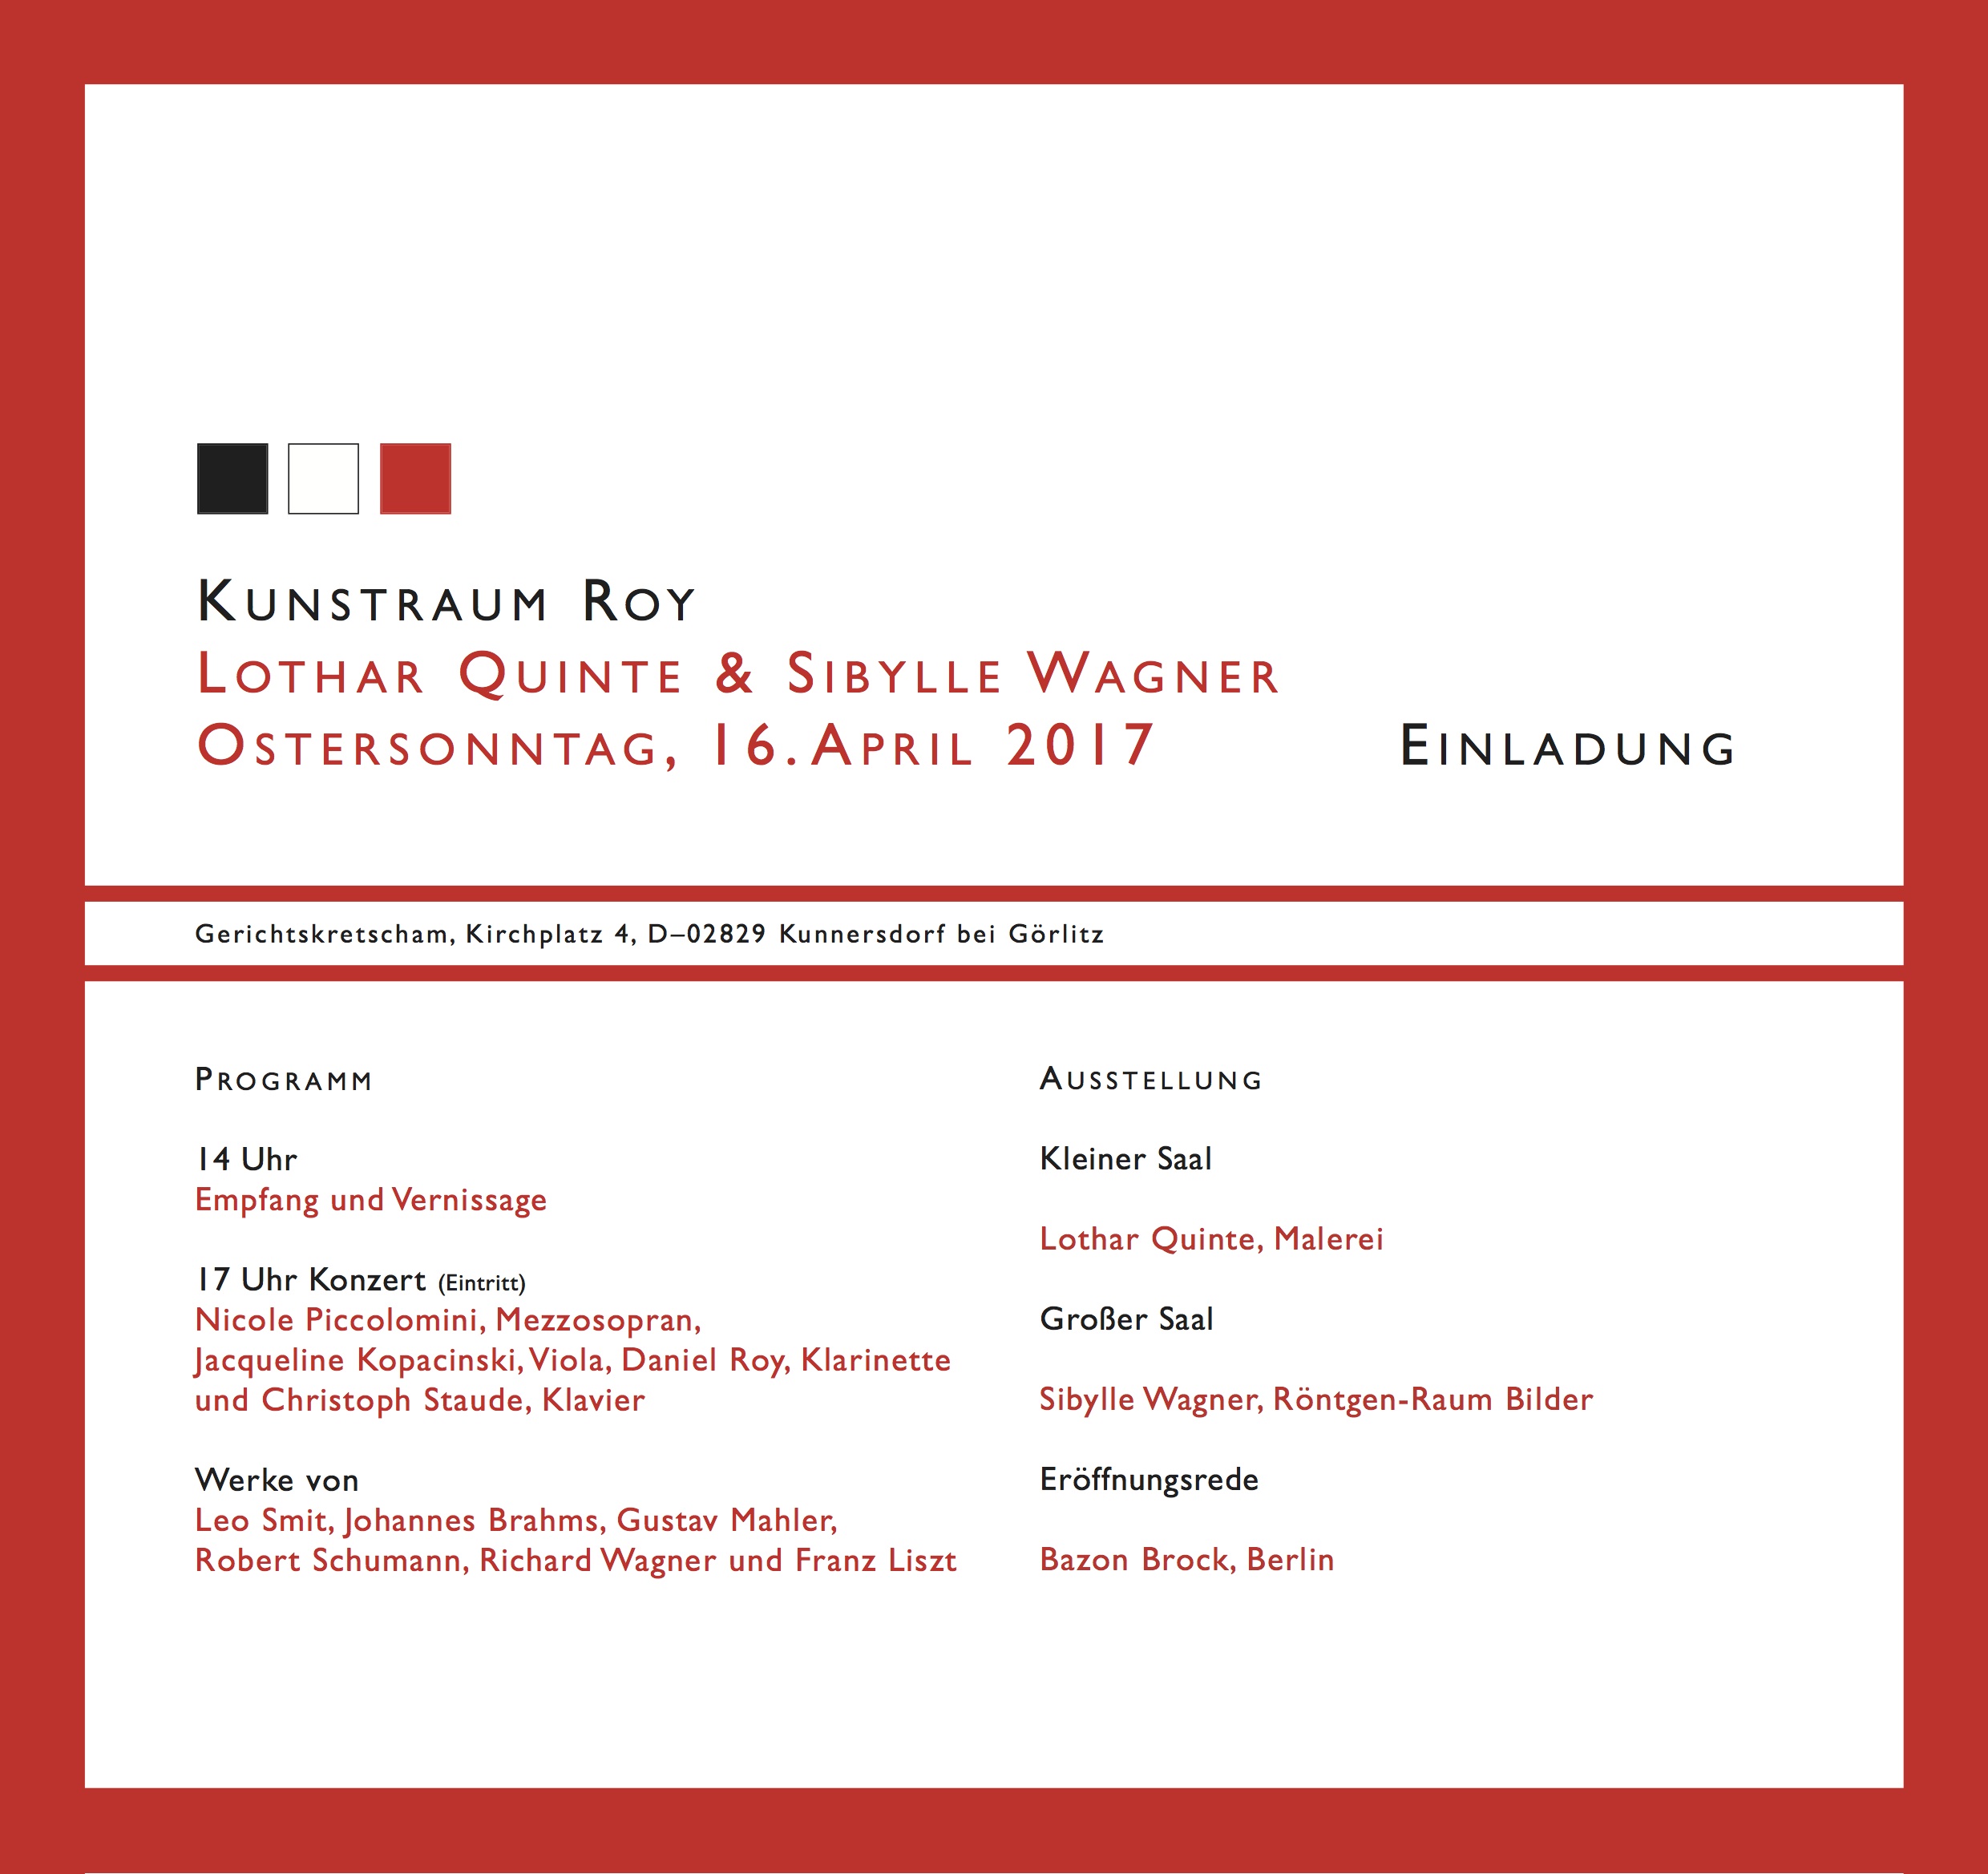 Ausstellung: Sibylle Wagner & Lothar Quinte, Bild: Kunstraum Roy, 16.04.2017.